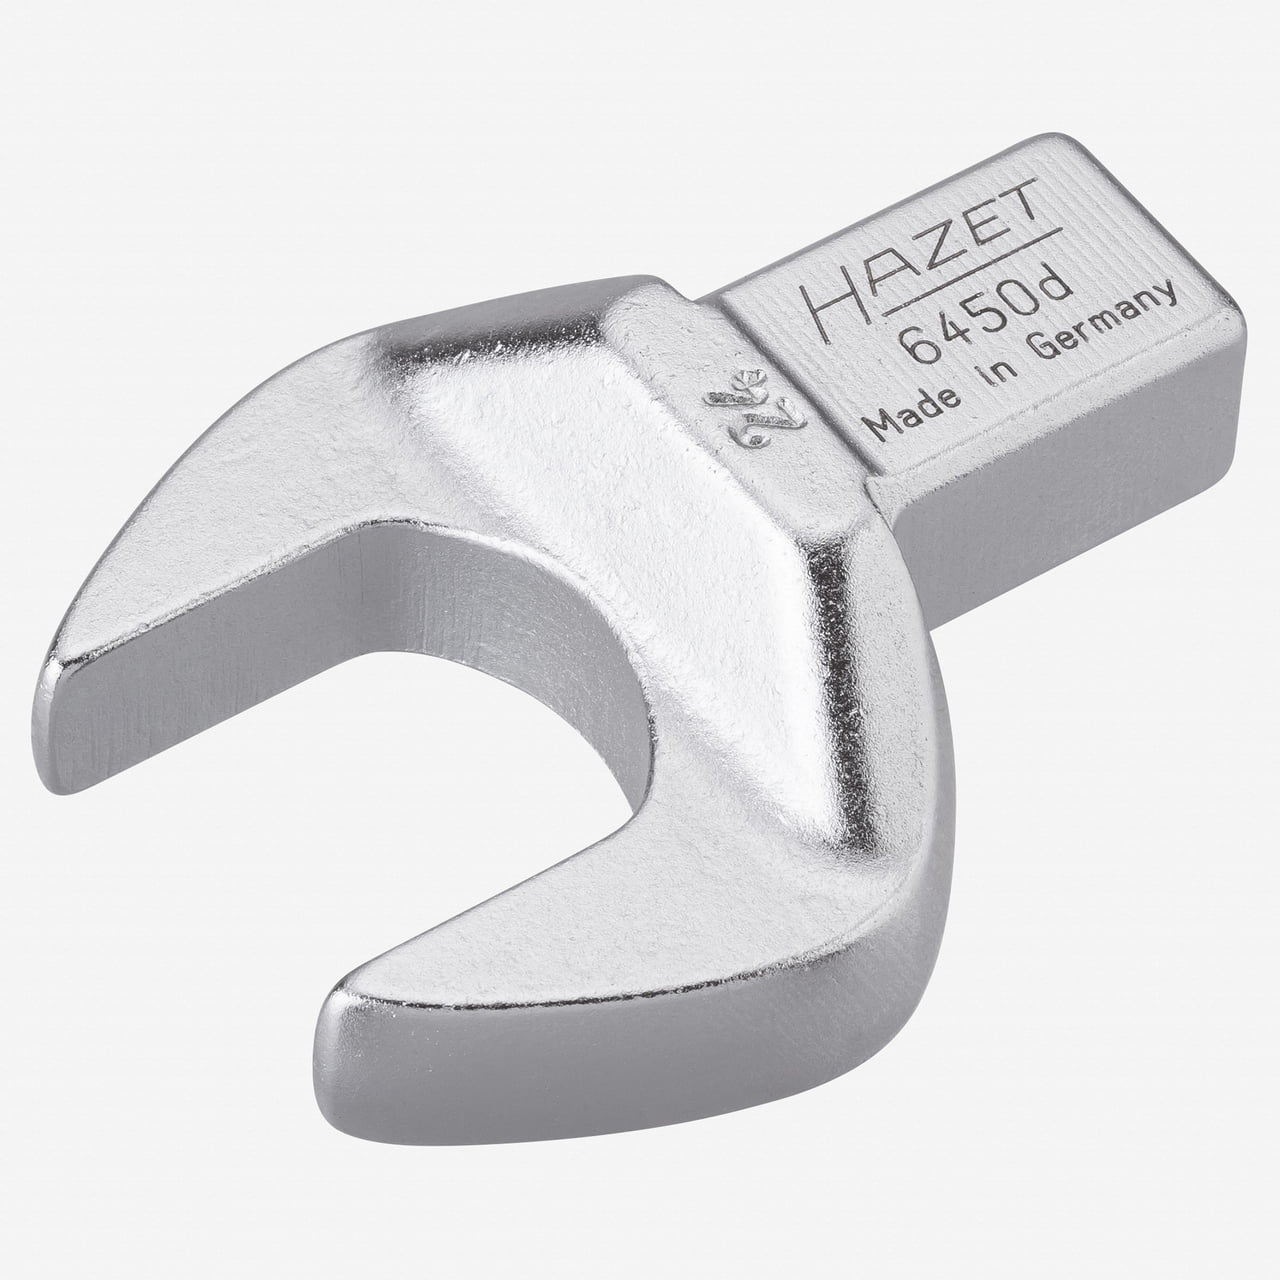 Hazet HAZET Germany 6450d-24mm Insert Open-Ended Wrench 14x18 Insert Spanner #3 